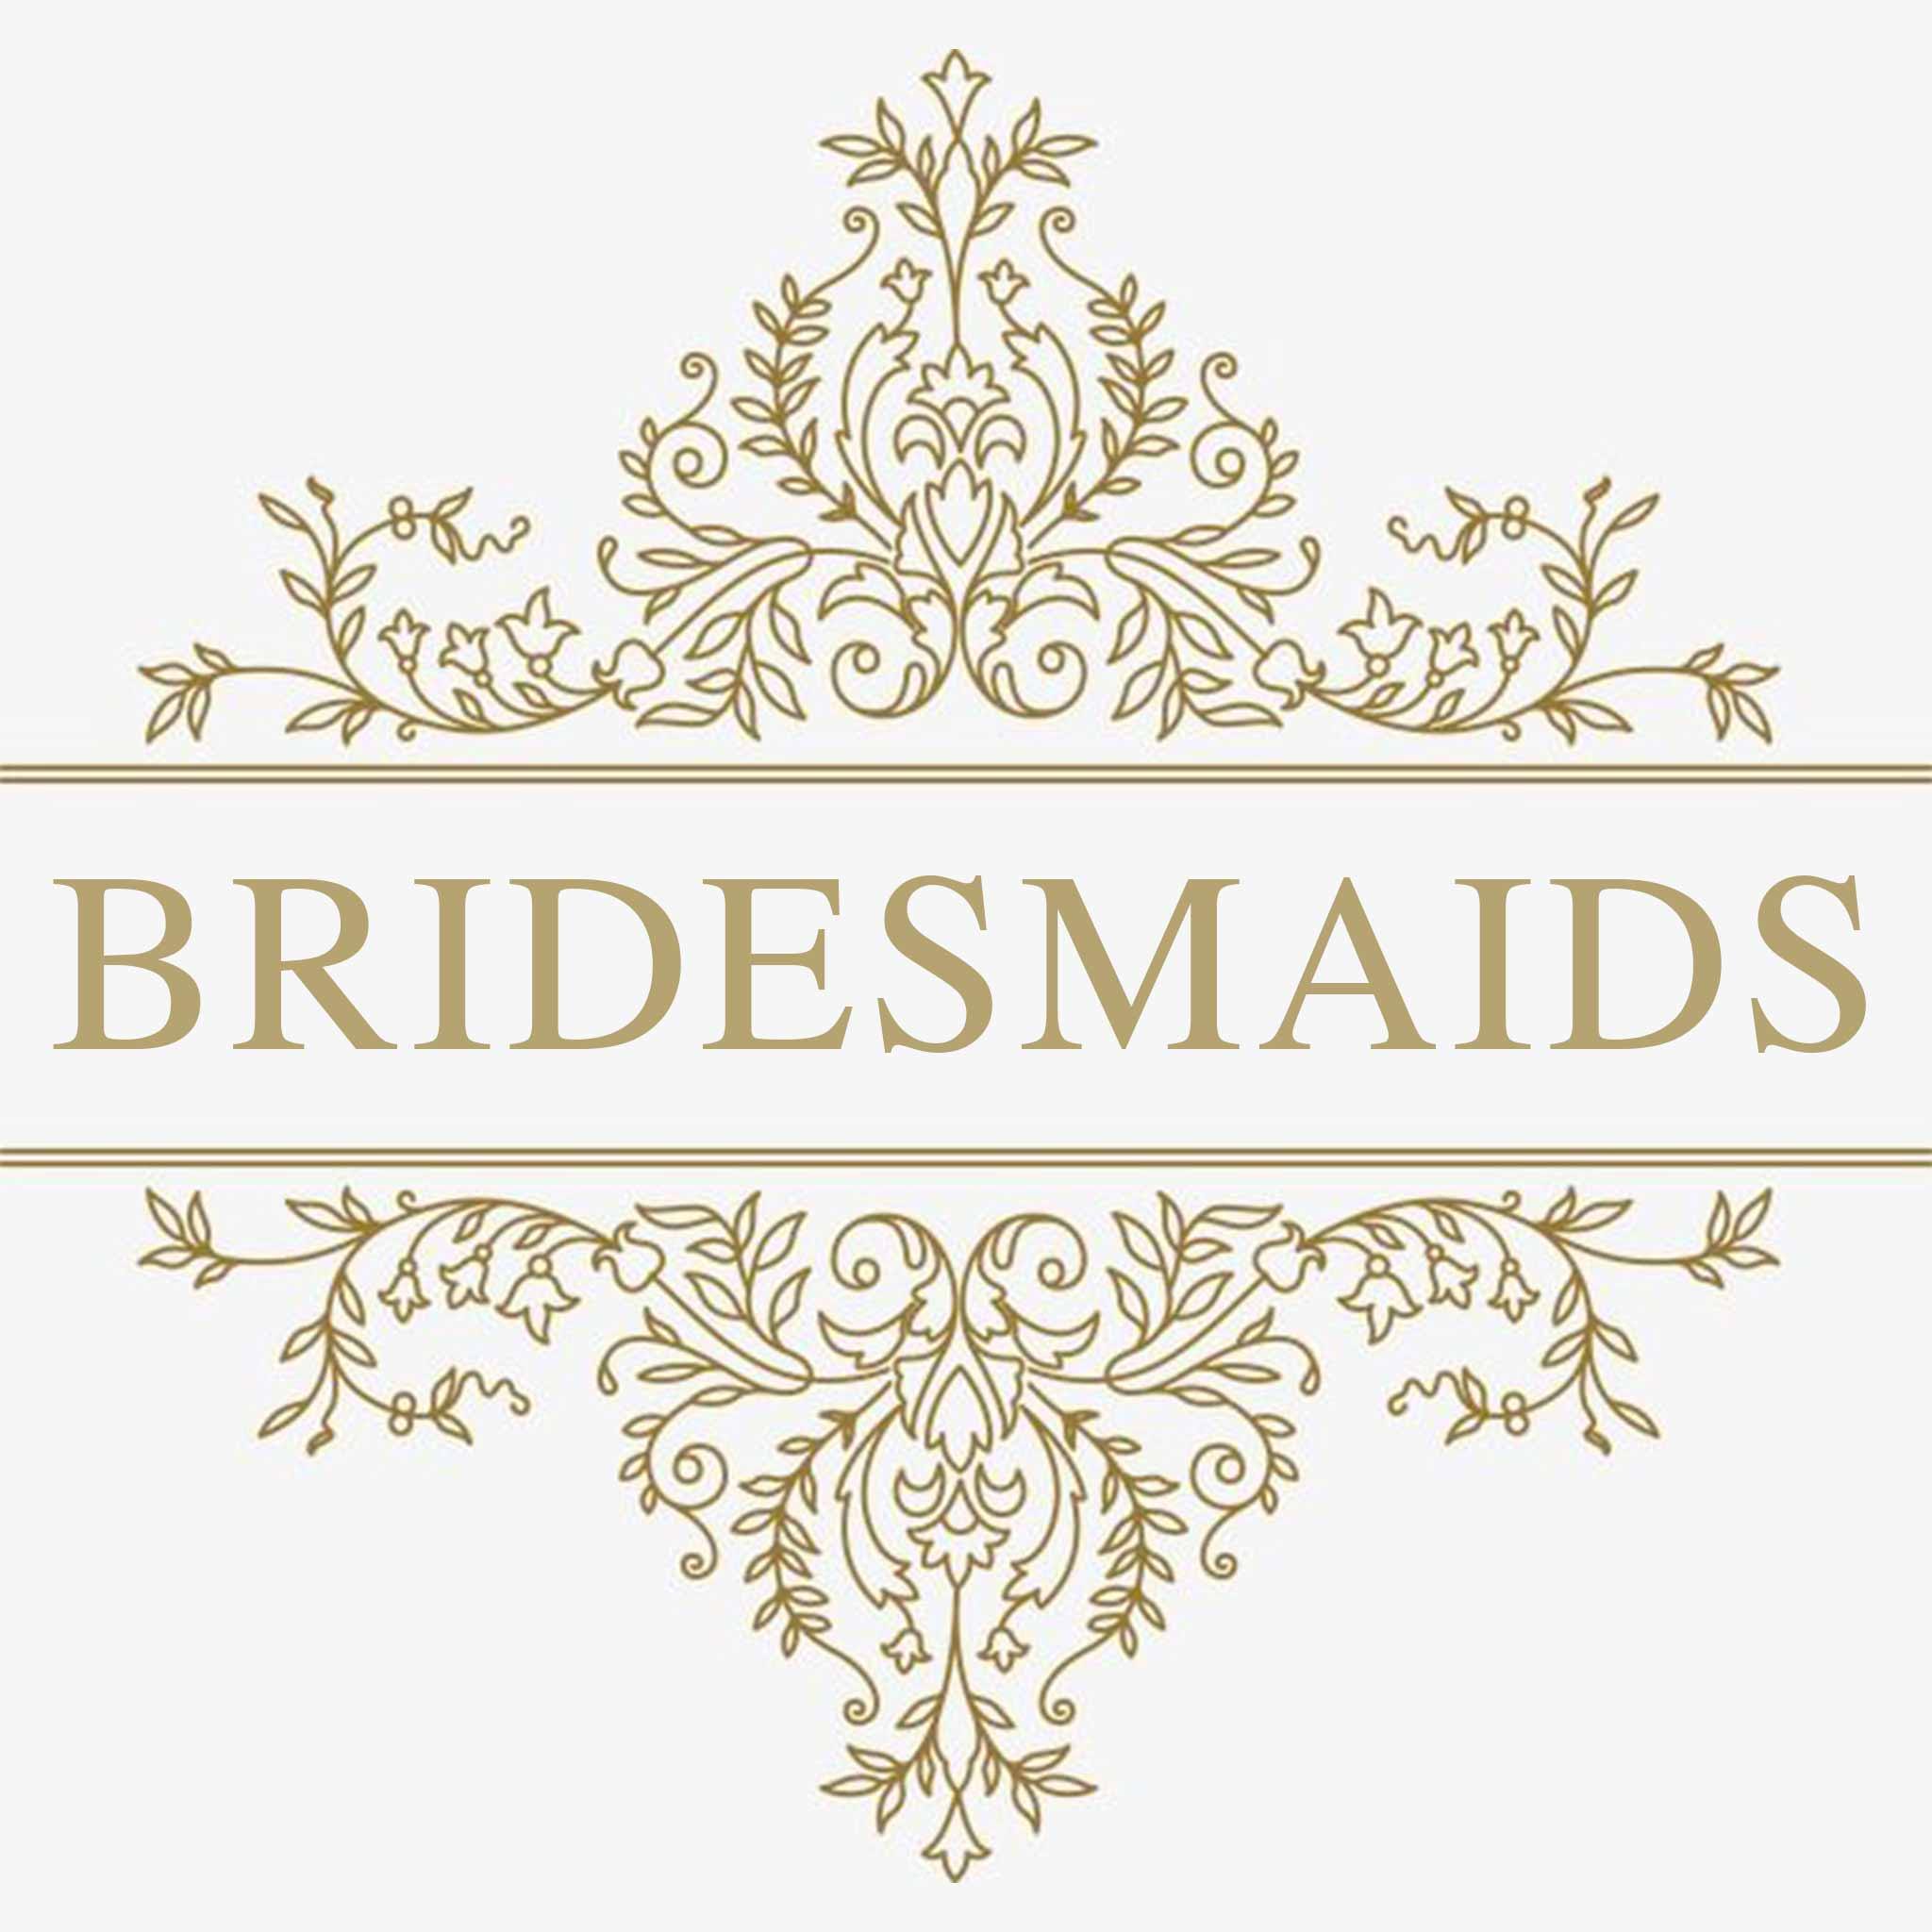 Bridesmaids | Customly Gifts